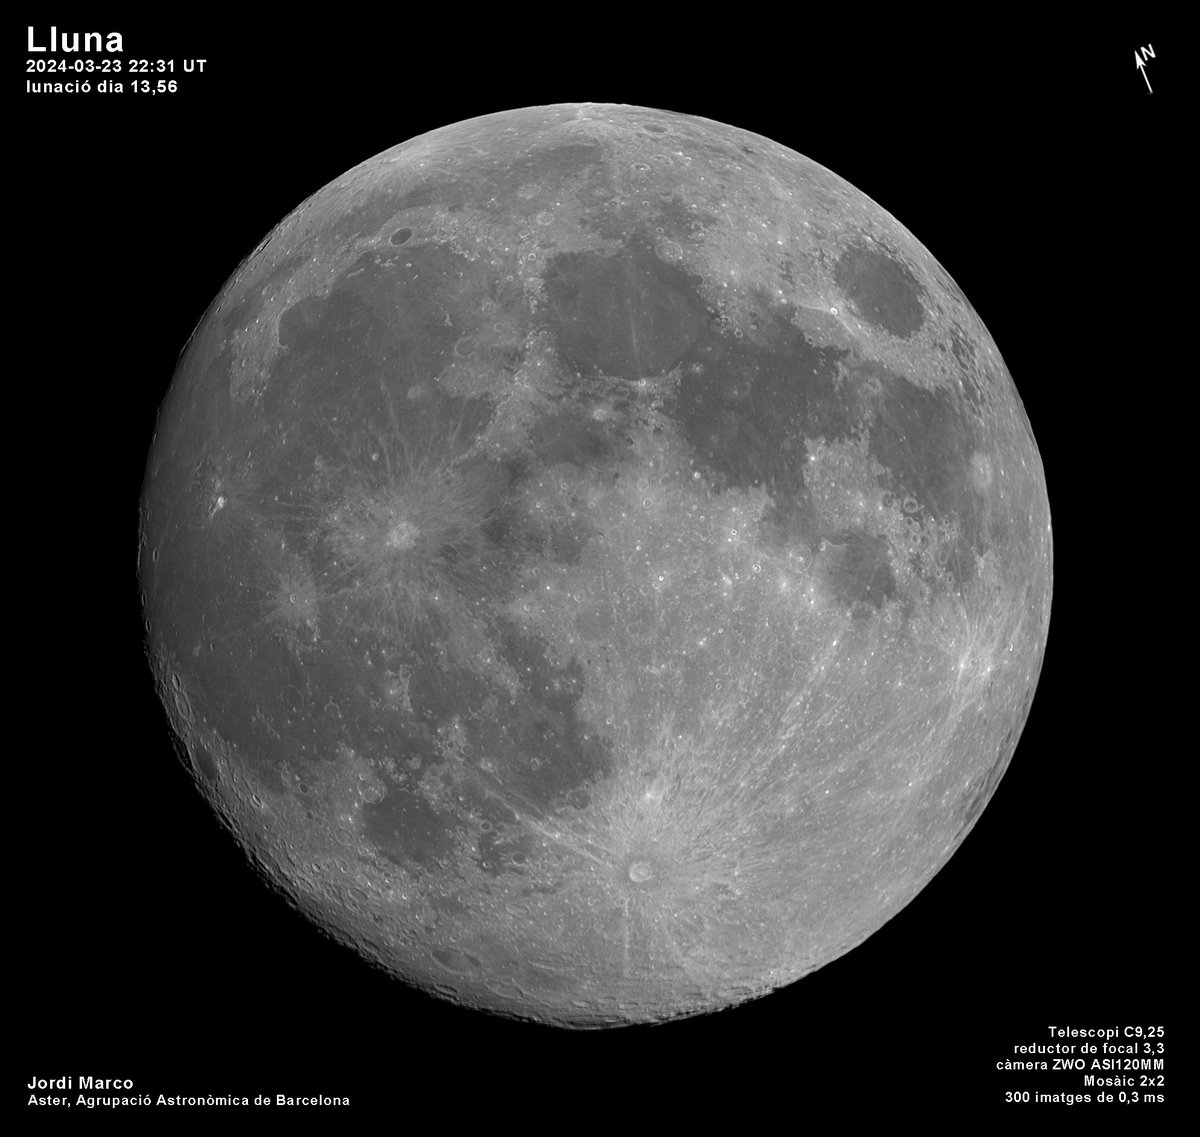 #Lluna del 23 mar 2024 A 401714 Km. Al nord del terminador destaca el cràter Pythagoras (133Km) amb la muntanya central típica de molts cràters d'impacte. @estelsiplanetes @El_Universo_Hoy #cielosESA #moon @AlfredRPico #luna #astronomia #Astrophotography